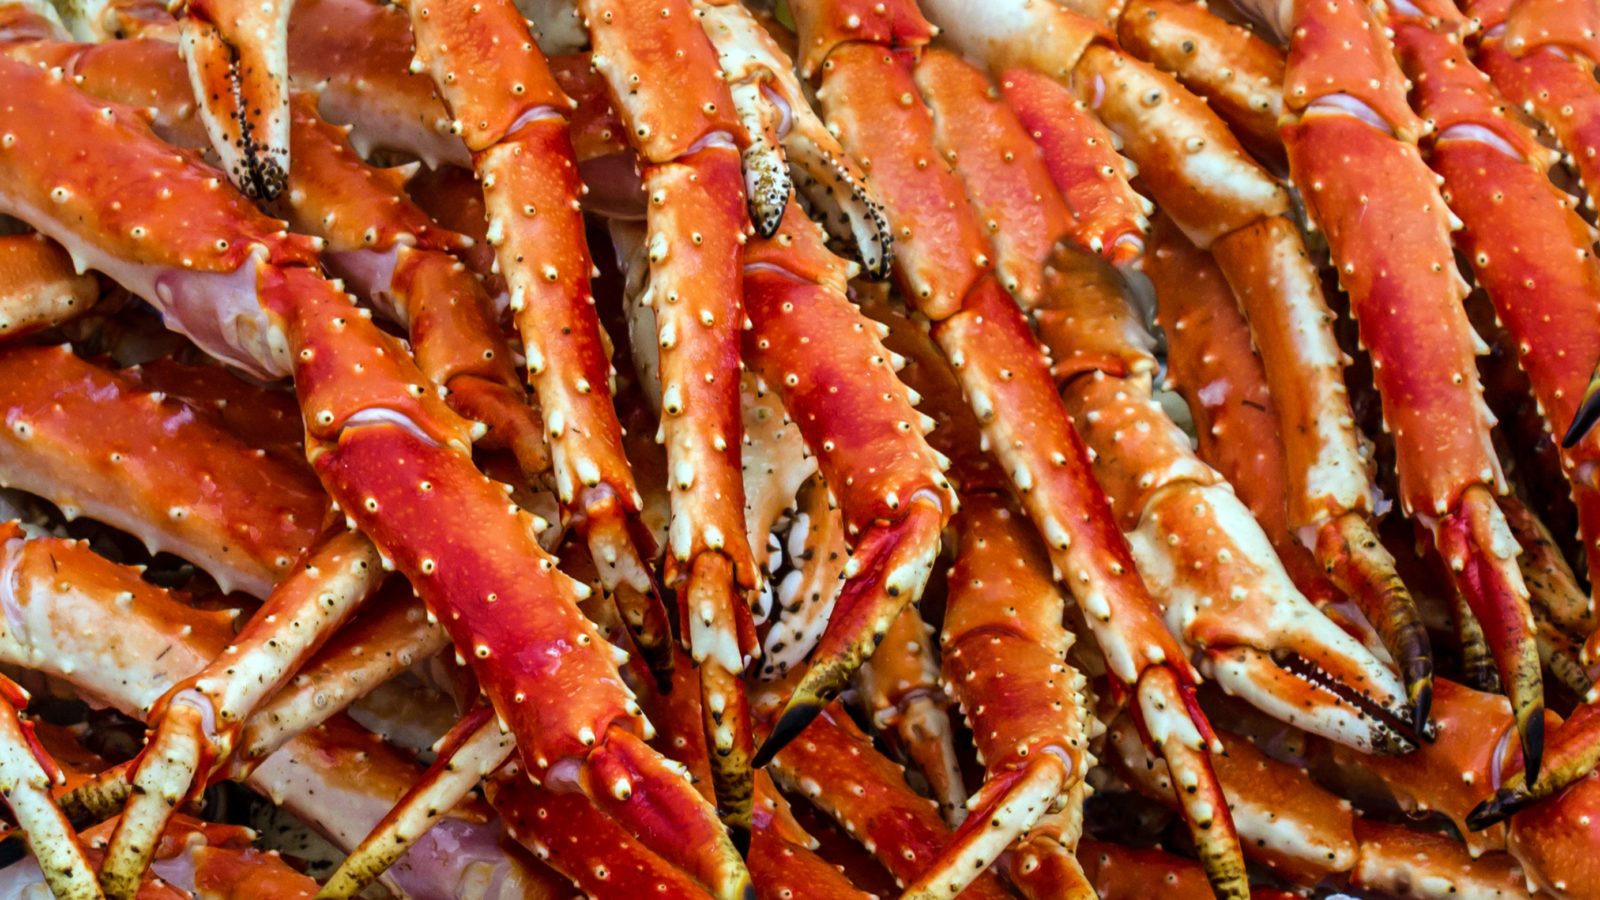 Meat of king crabs in Bergen fish market, Norway